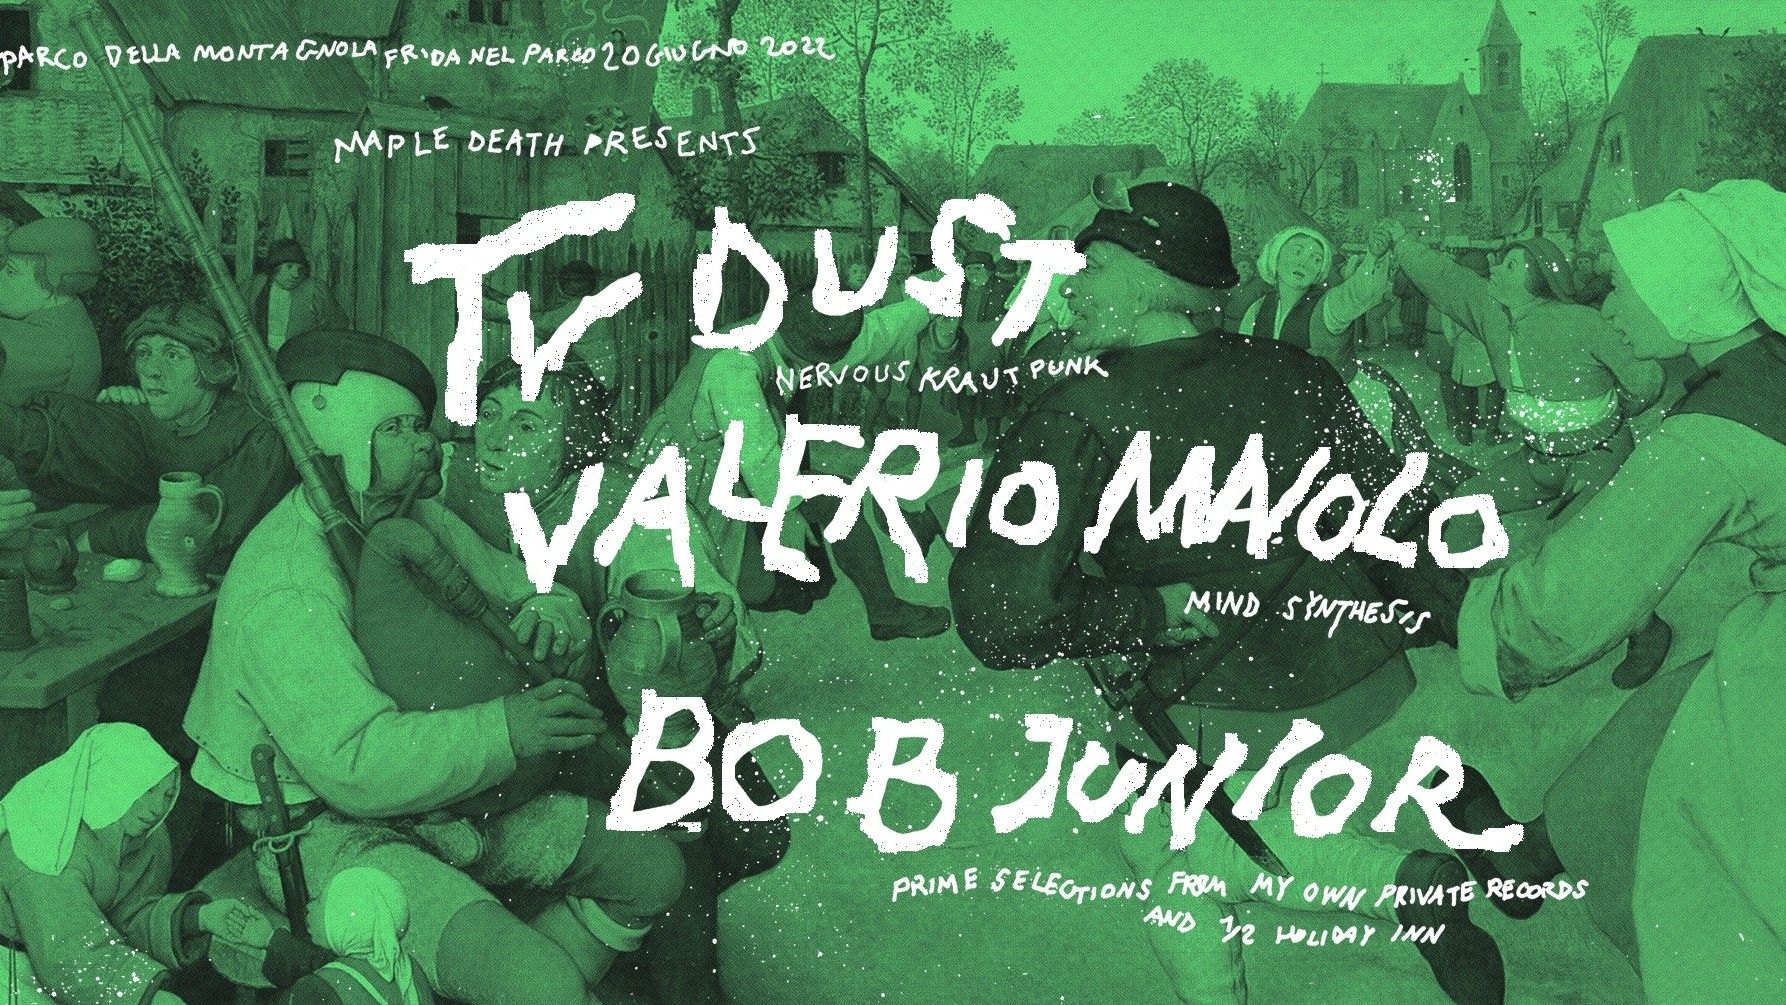 TV Dust, Valerio Maiolo, Bob Junior | Maple Death